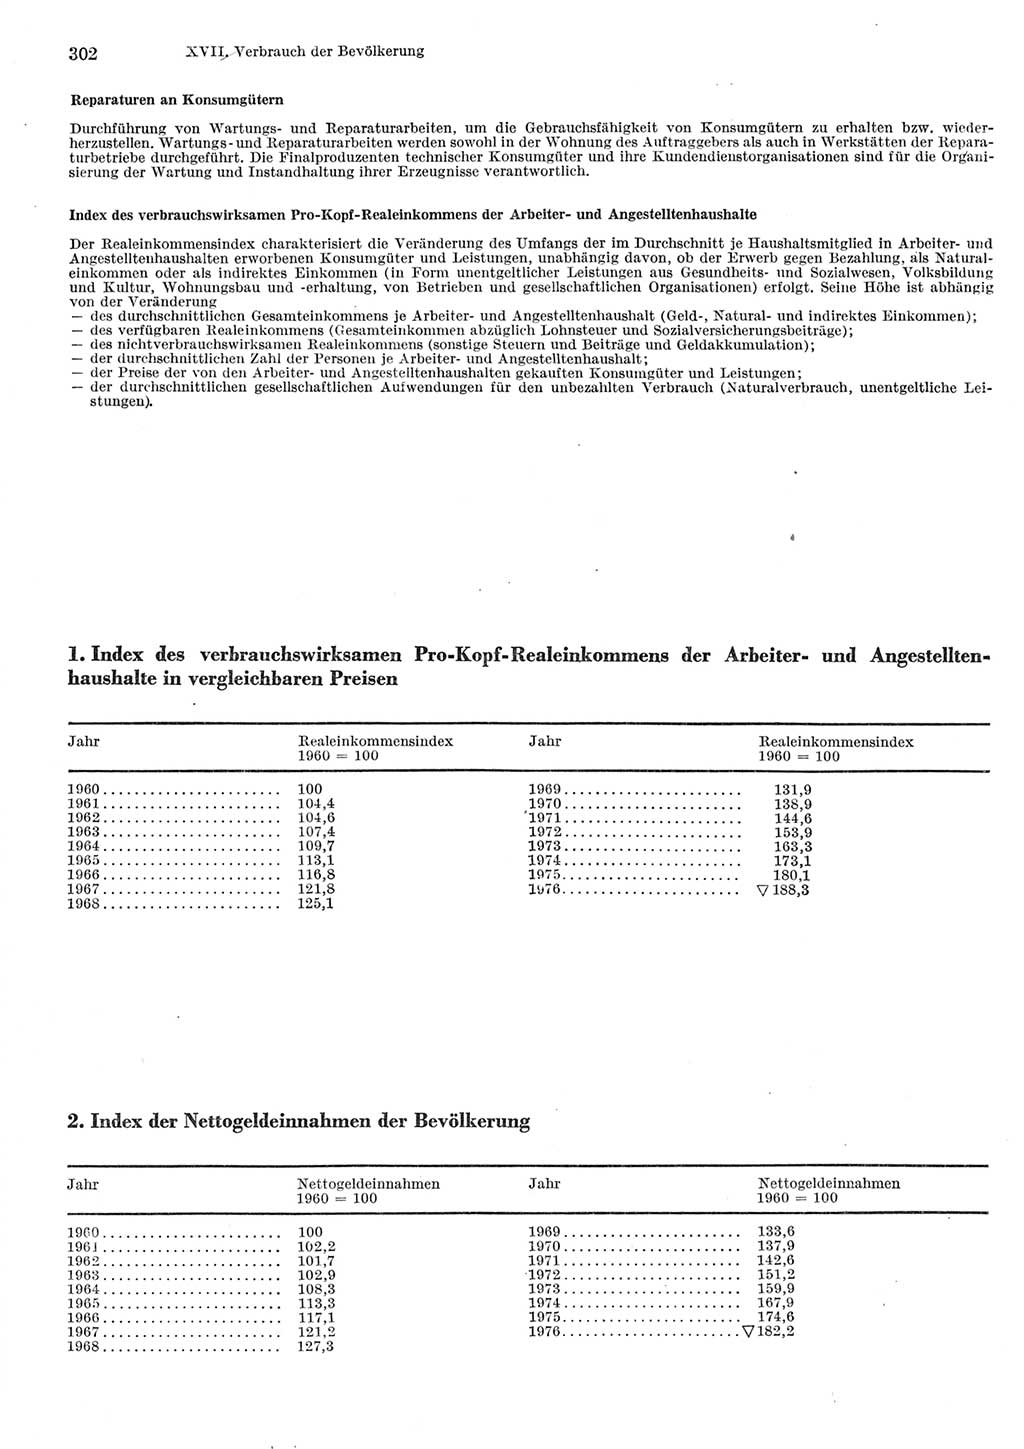 Statistisches Jahrbuch der Deutschen Demokratischen Republik (DDR) 1977, Seite 302 (Stat. Jb. DDR 1977, S. 302)